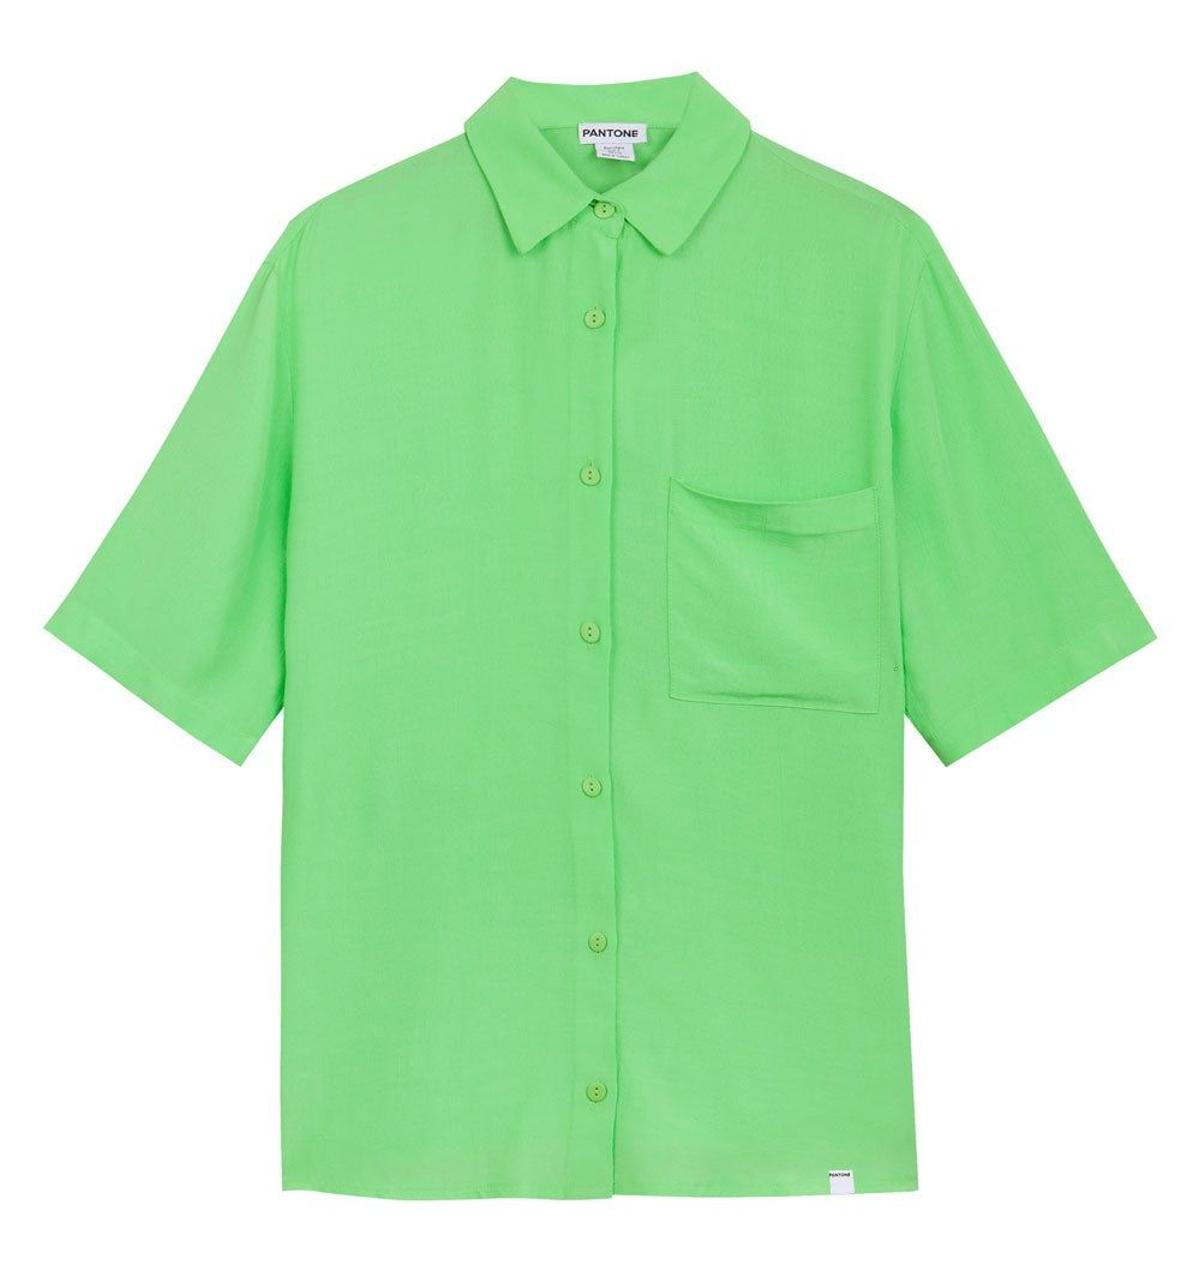 Blusa de manga corta en color verde de la colección Pantone de Bershka. (Precio: 17, 99 euros)